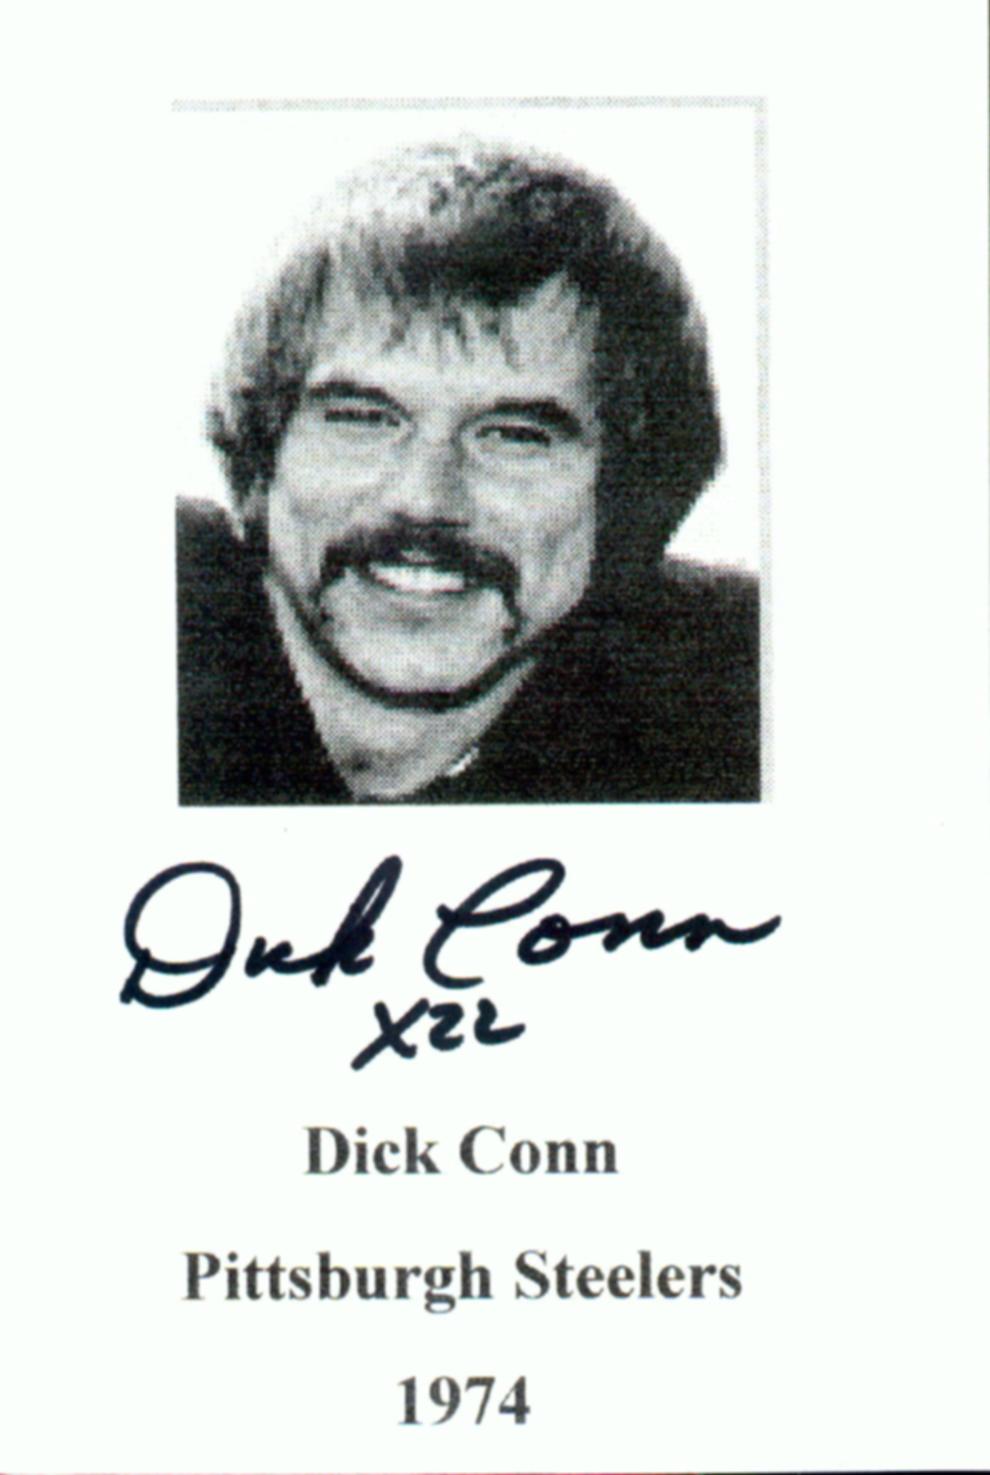 Dave Reavis/Dick Conn. - DICKCONN